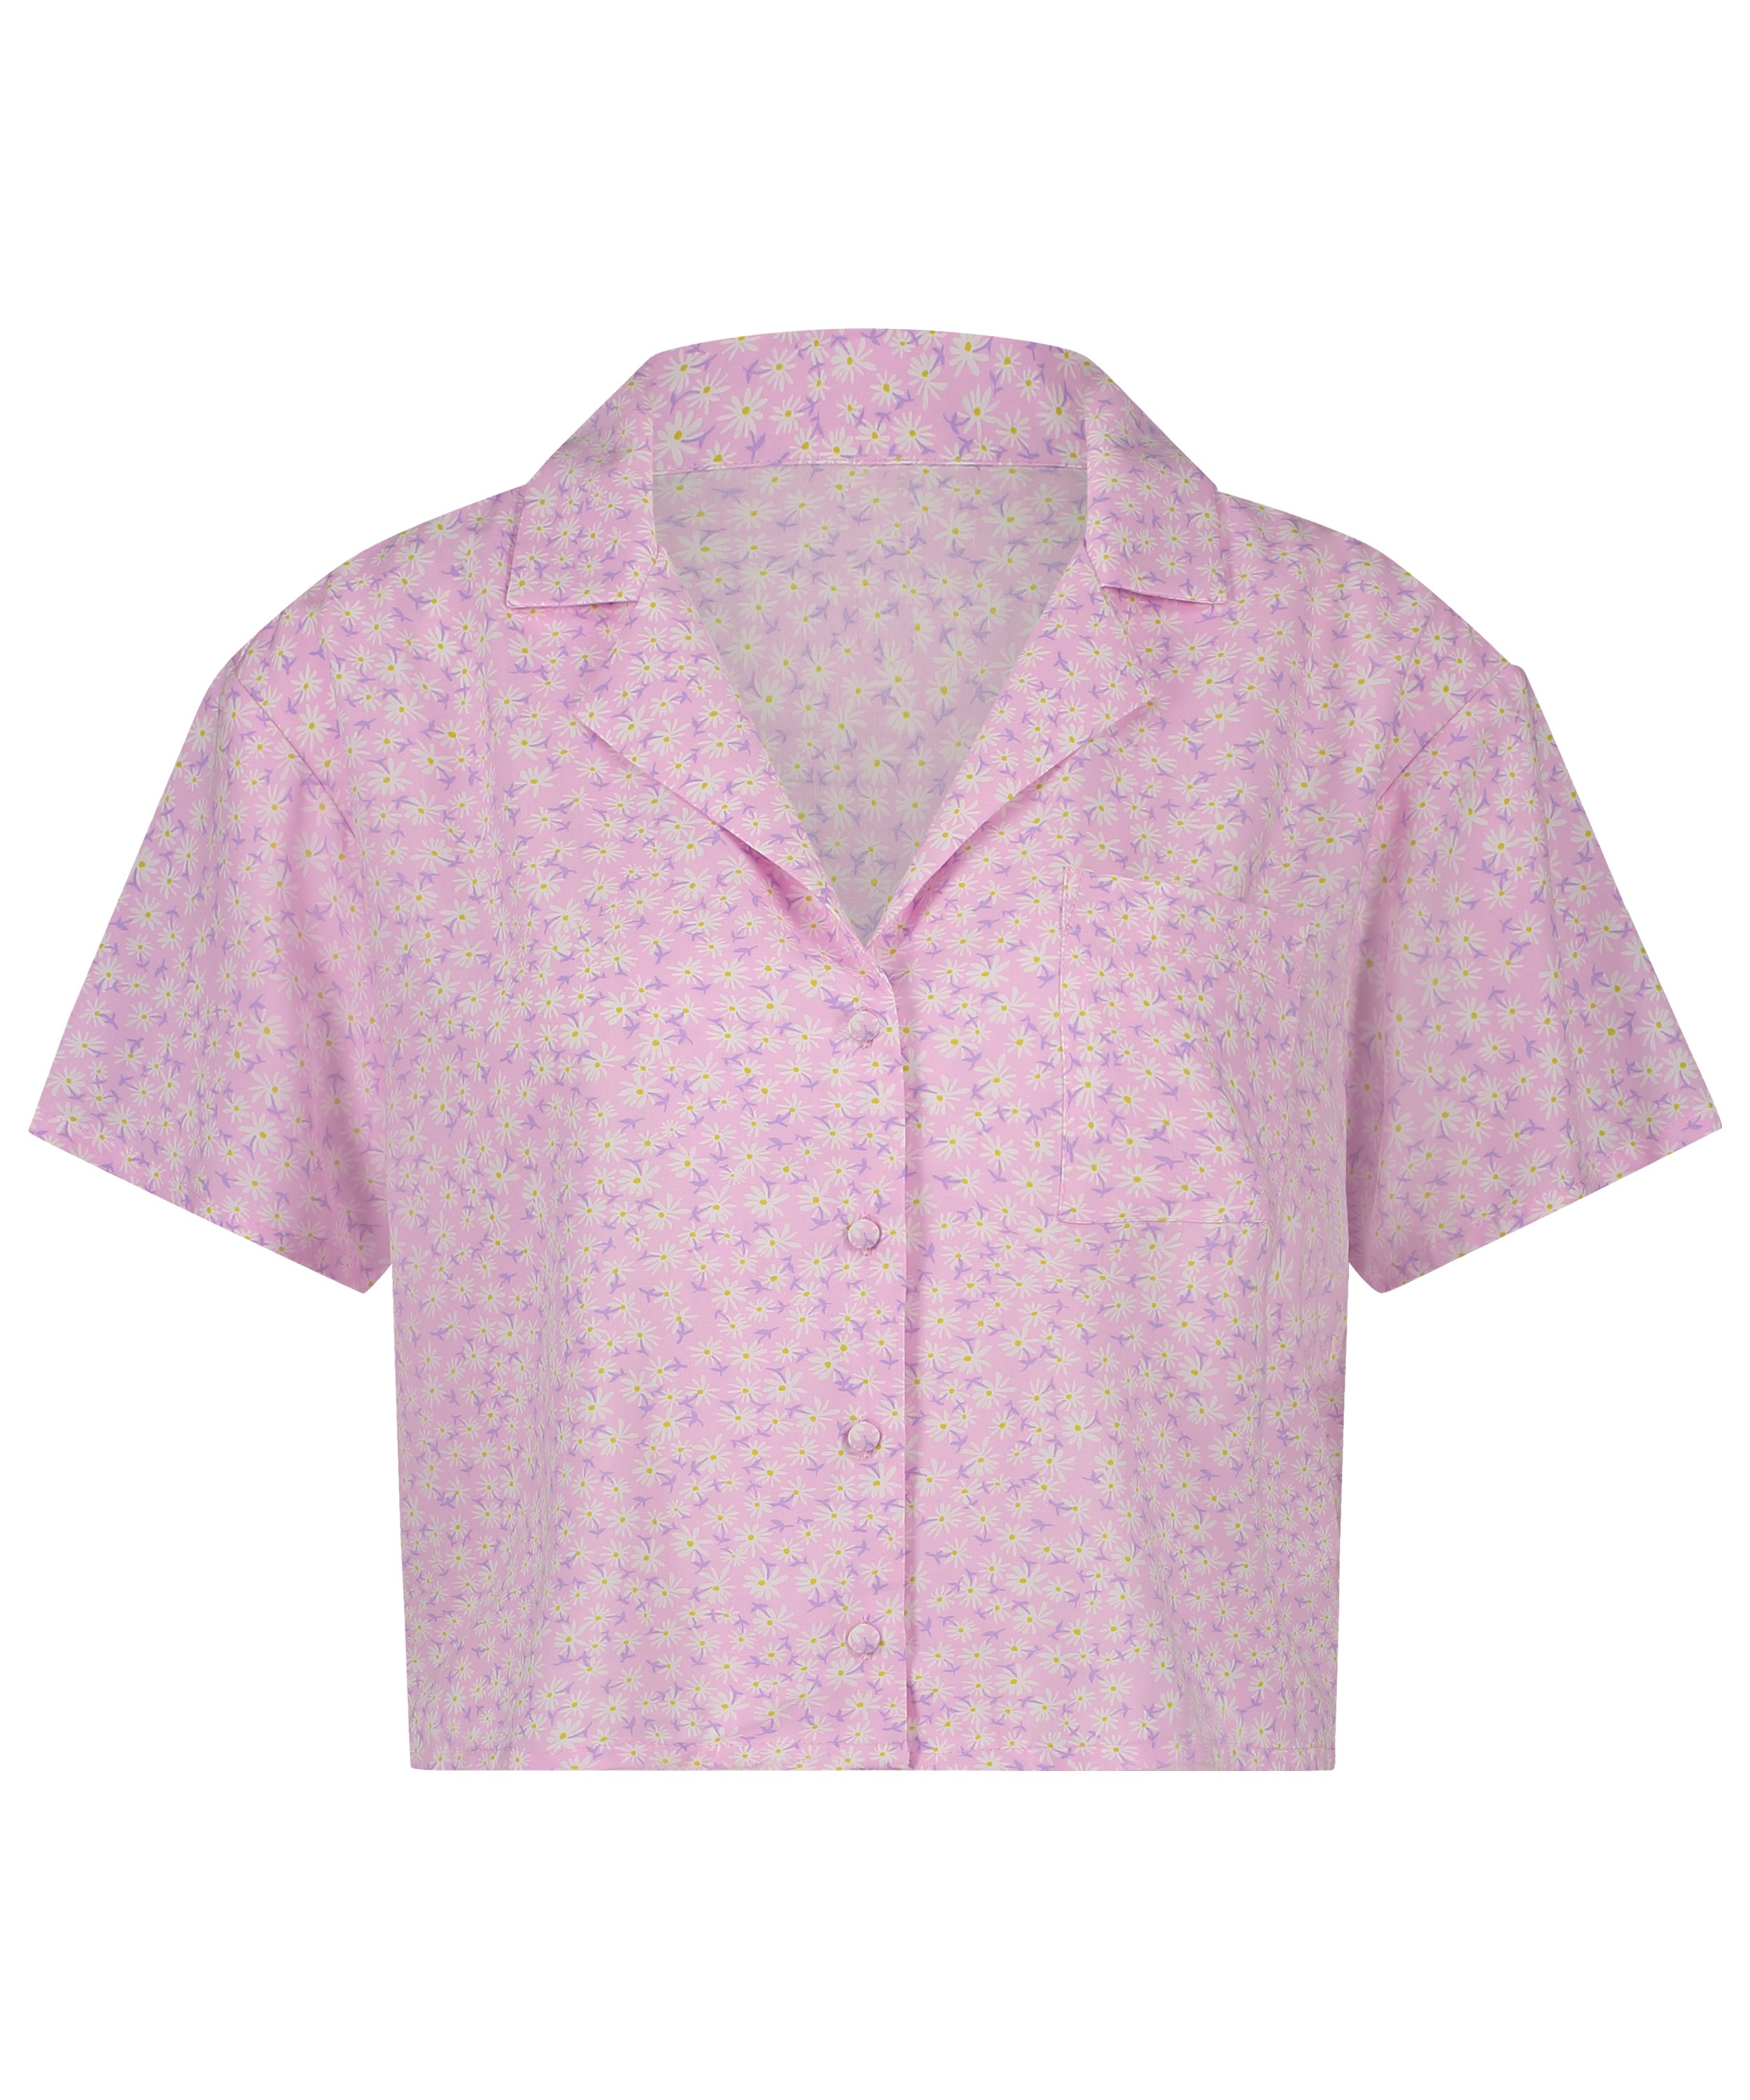 Pyjama Top, Pink, main